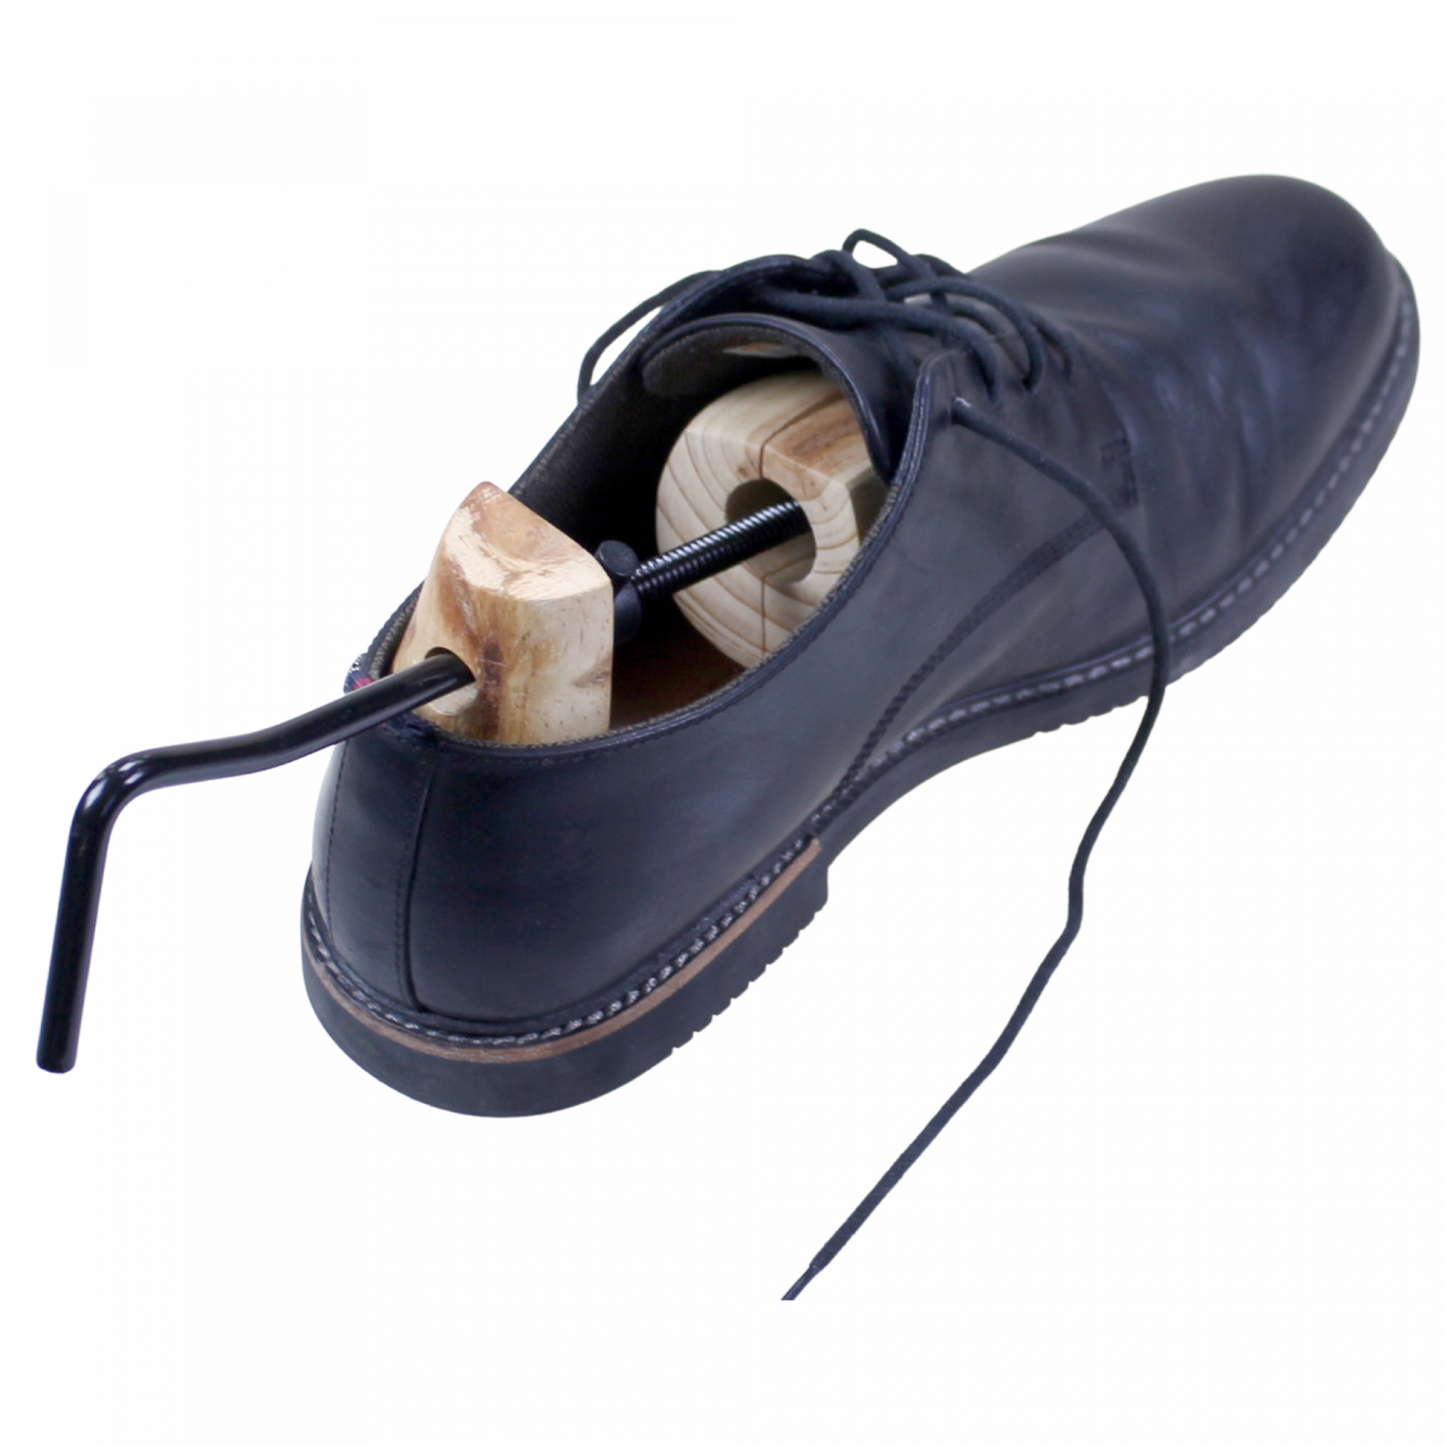 Genius Ideas GD-065500: 1 Piece Ladies Wooden Shoe Stretcher